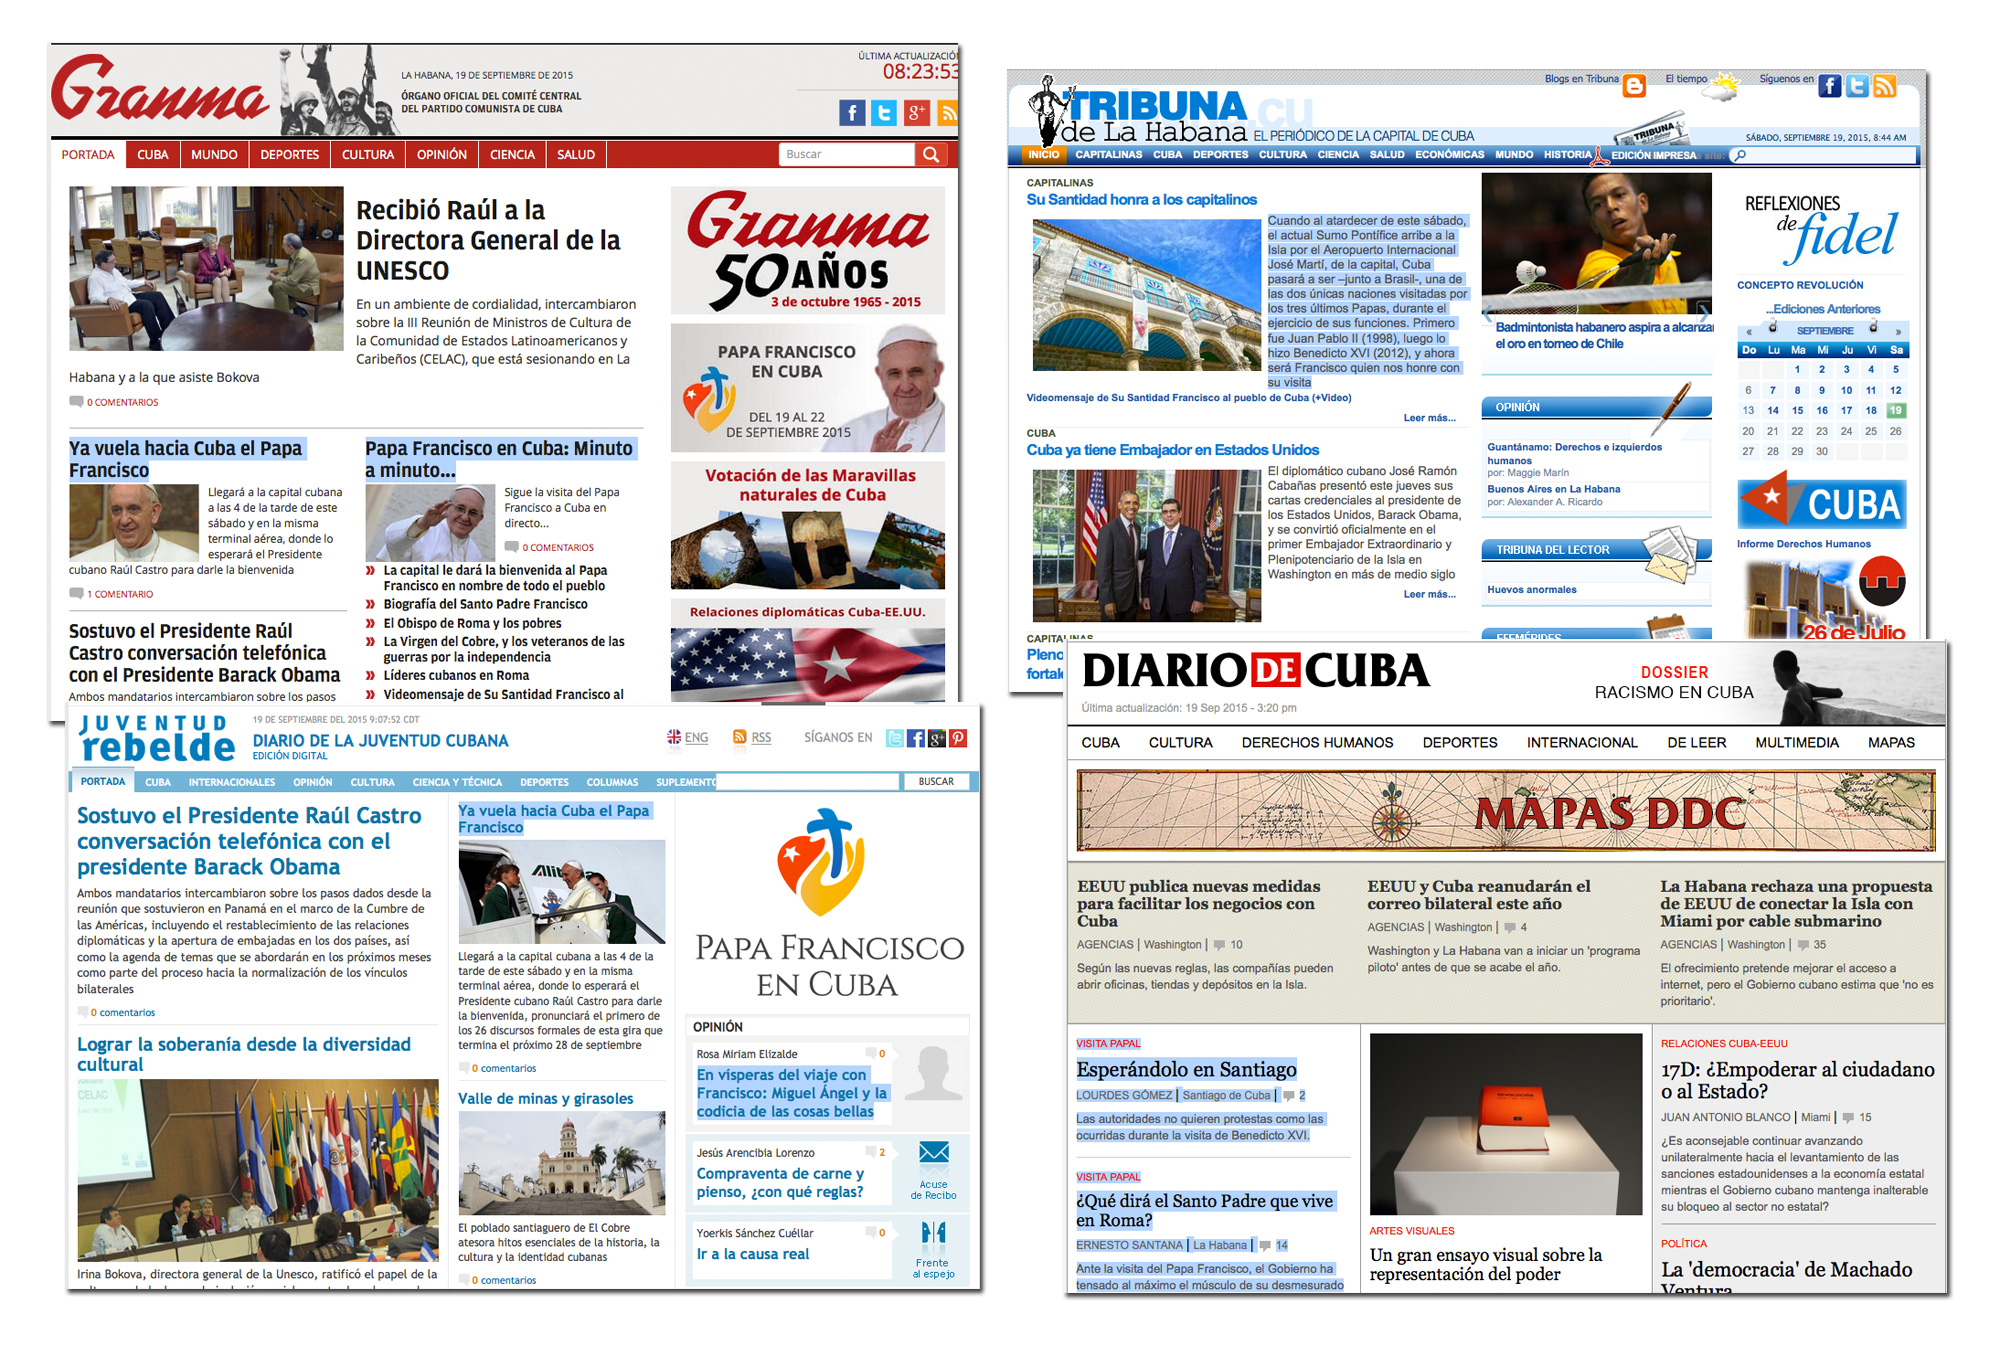 diarios digitales de Cuba informan de la inminente llegada del papa Francisco viaje Cuba y Estados Unidos 19-28 septiembre 2015